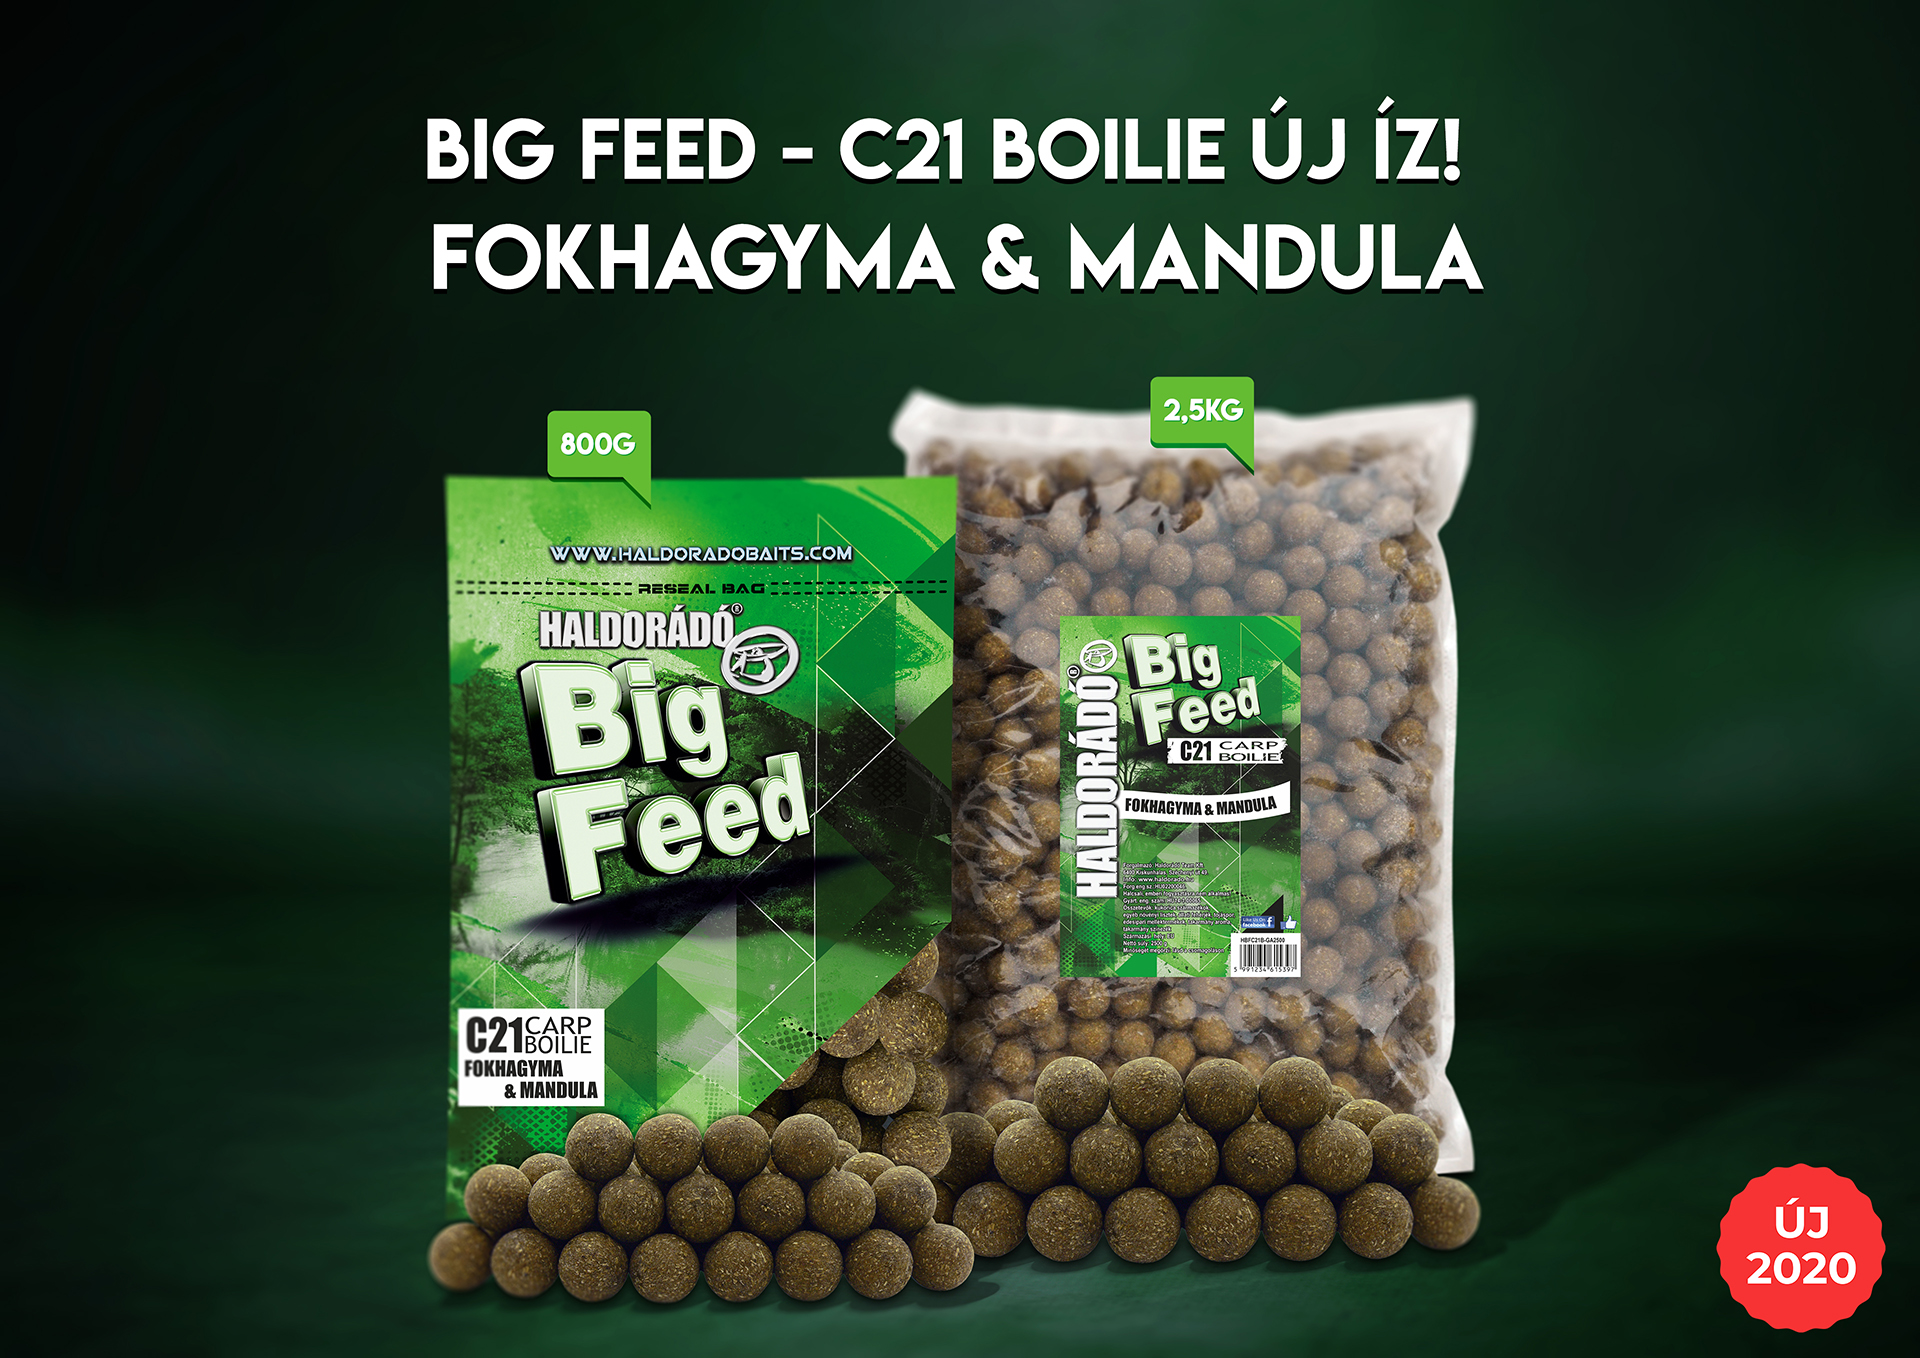 A Big Feed C21 Boilie széria a nagymennyiségű szoktató és helyben tartó etetésekhez kínál gazdaságos megoldást, ettől az évtől pedig a közkedvelt Fokhagyma & Mandula variáció is elérhetővé válik!